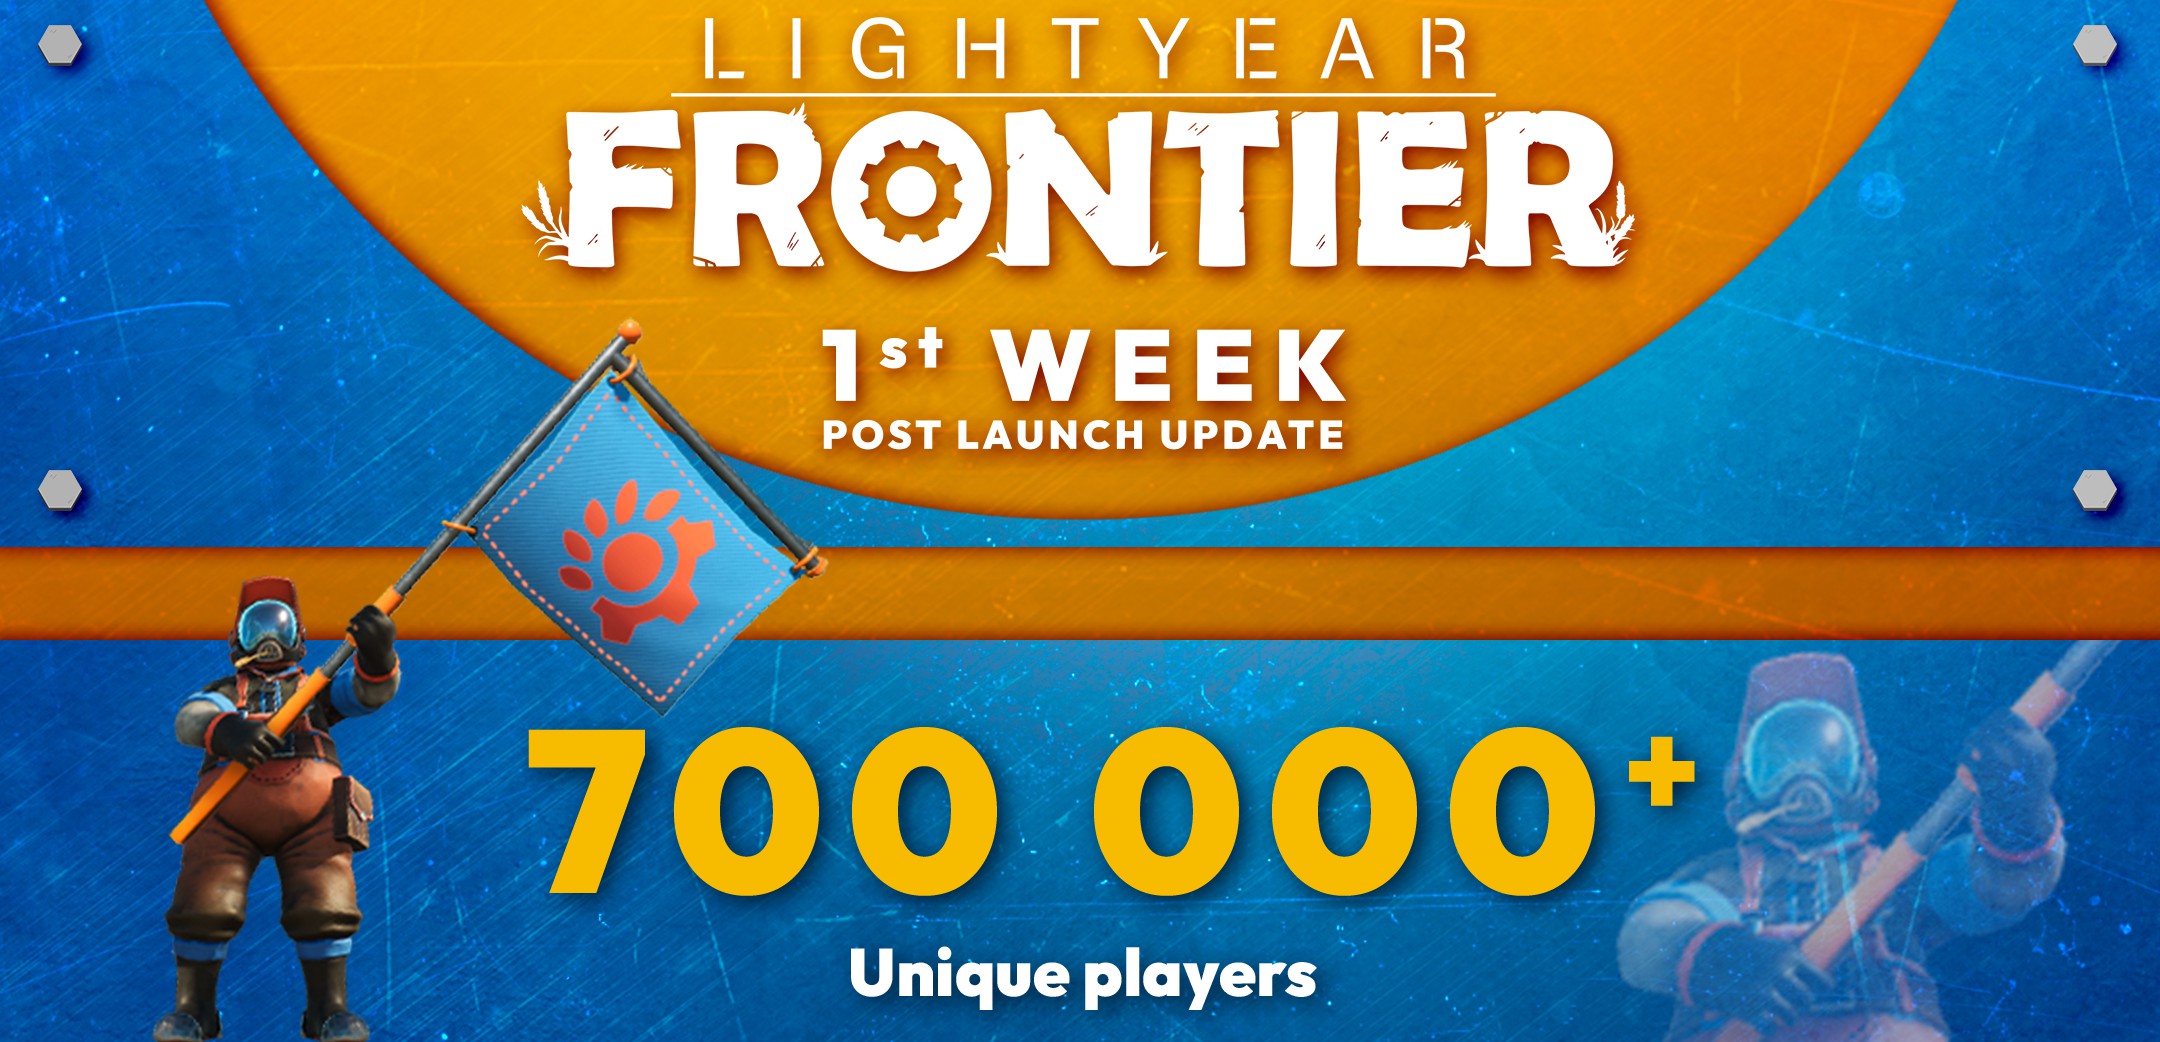 《光年边境》首周玩家数超70万